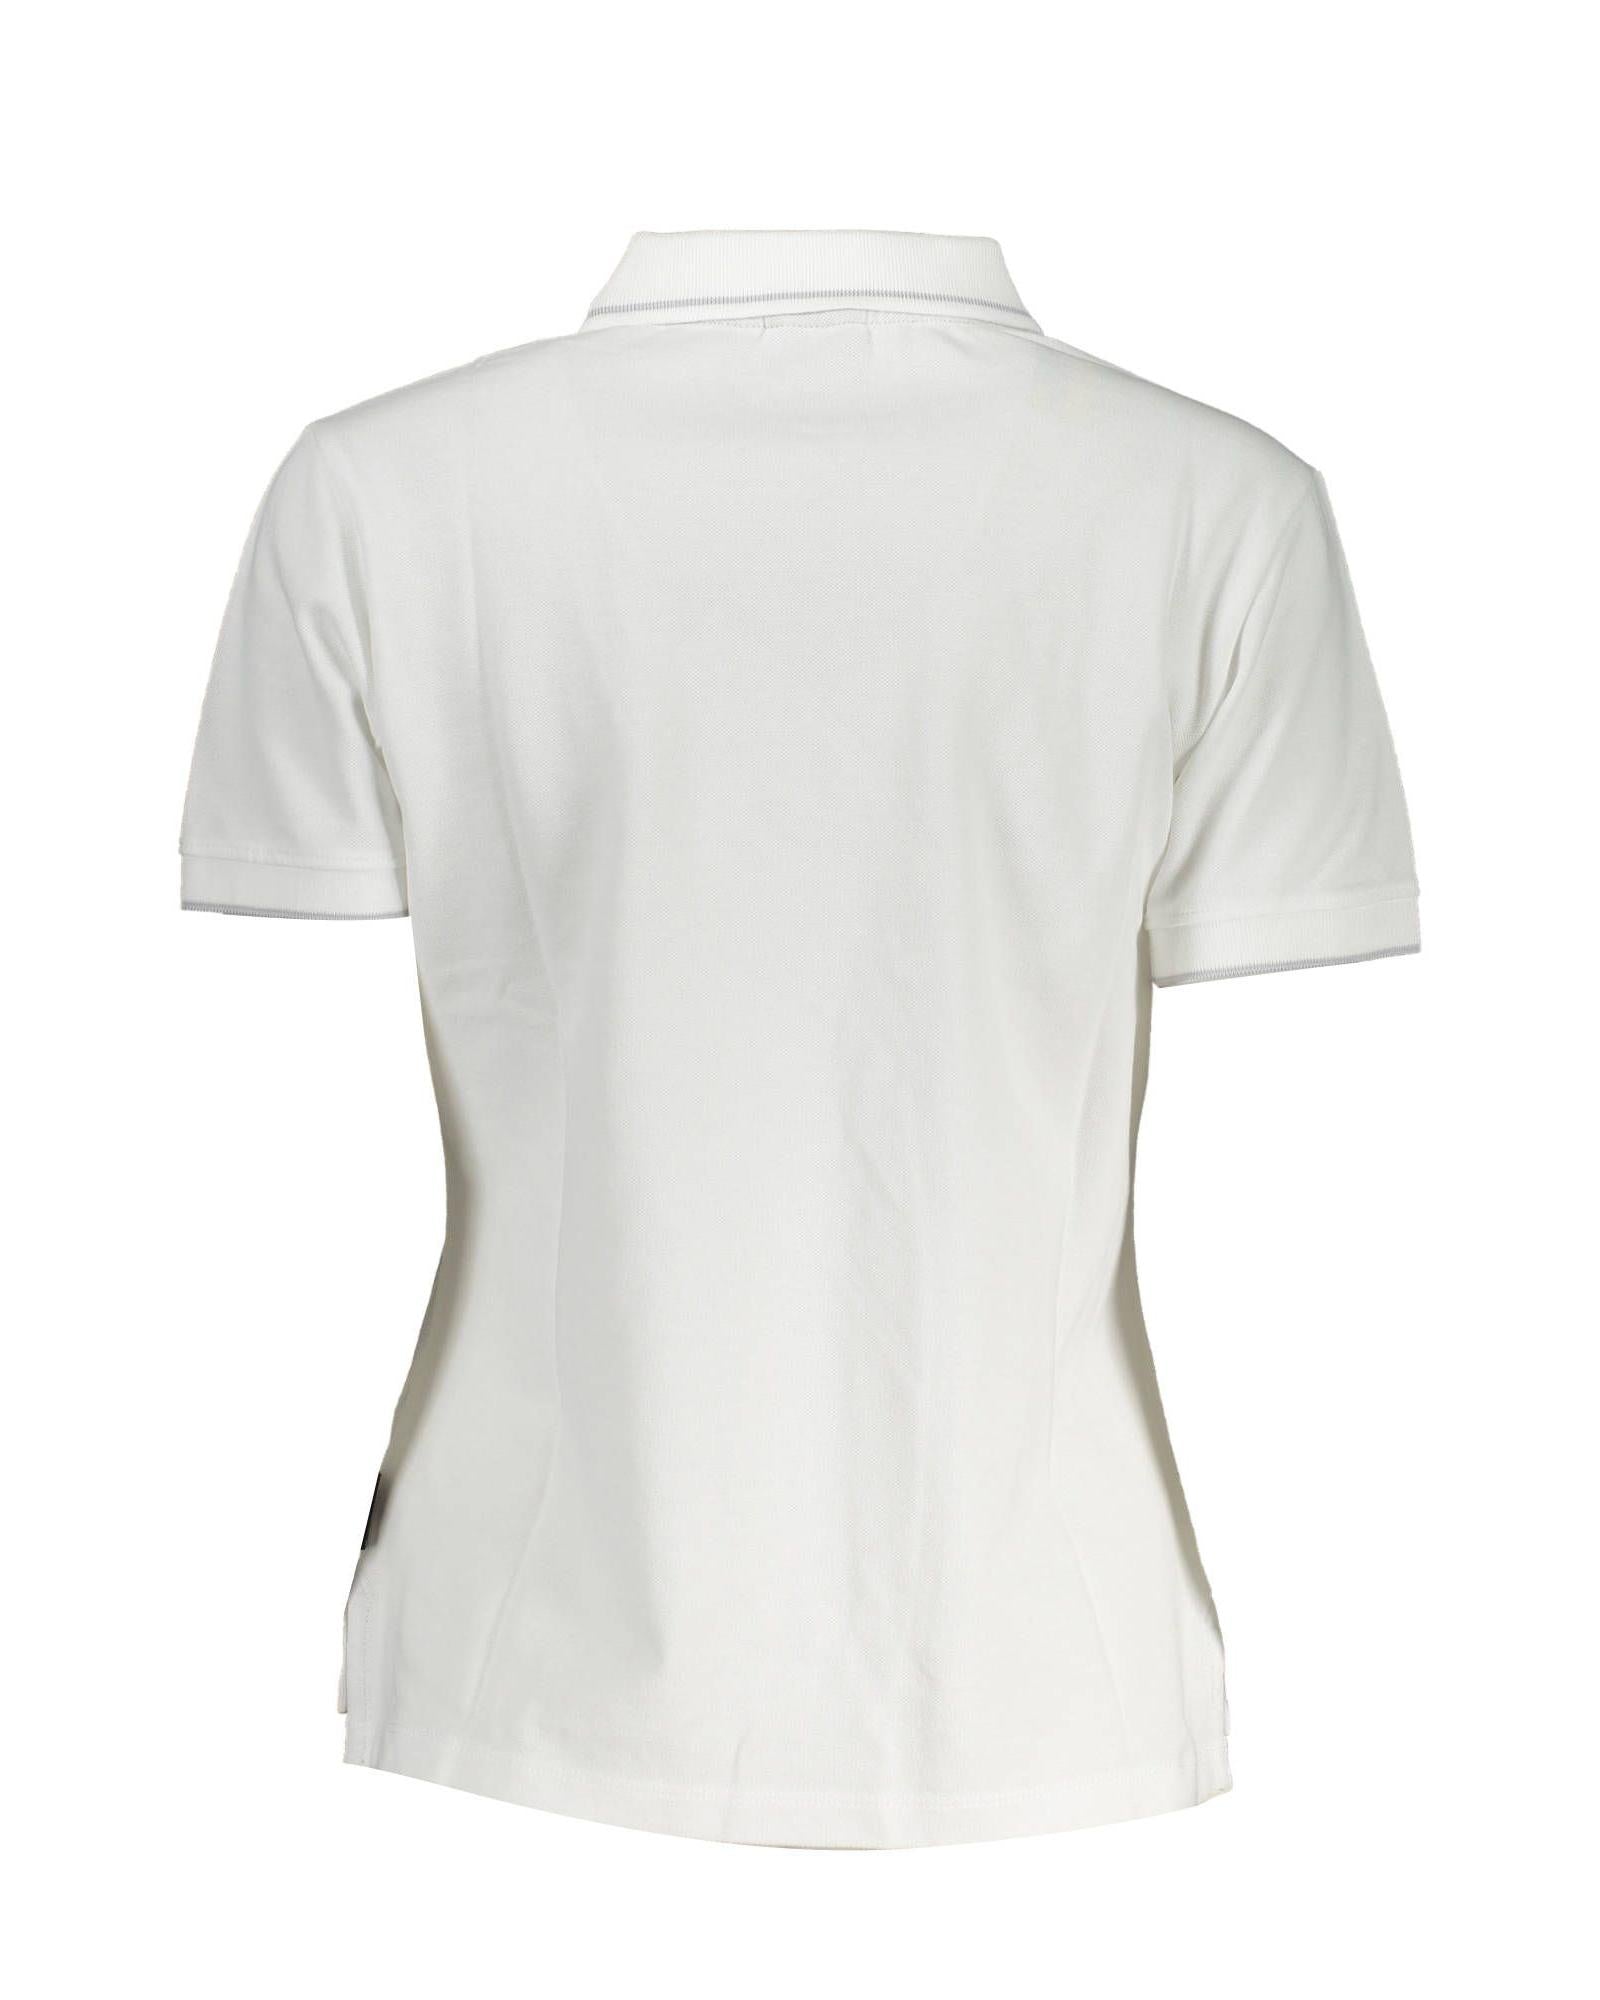 Men's White Cotton Polo Shirt - L